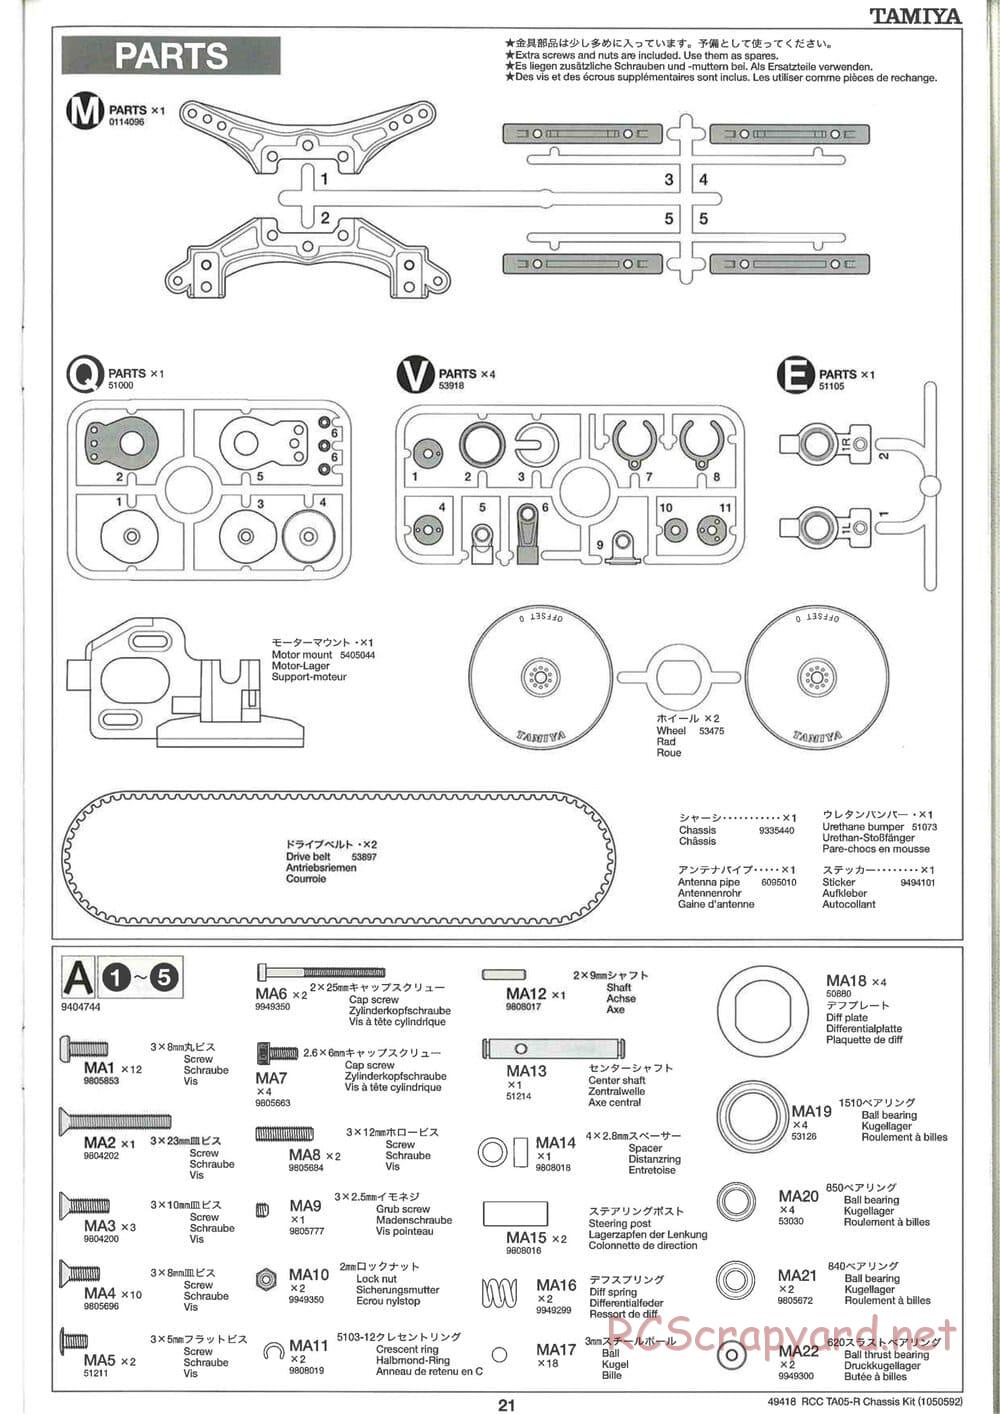 Tamiya - TA05-R Chassis - Manual - Page 21